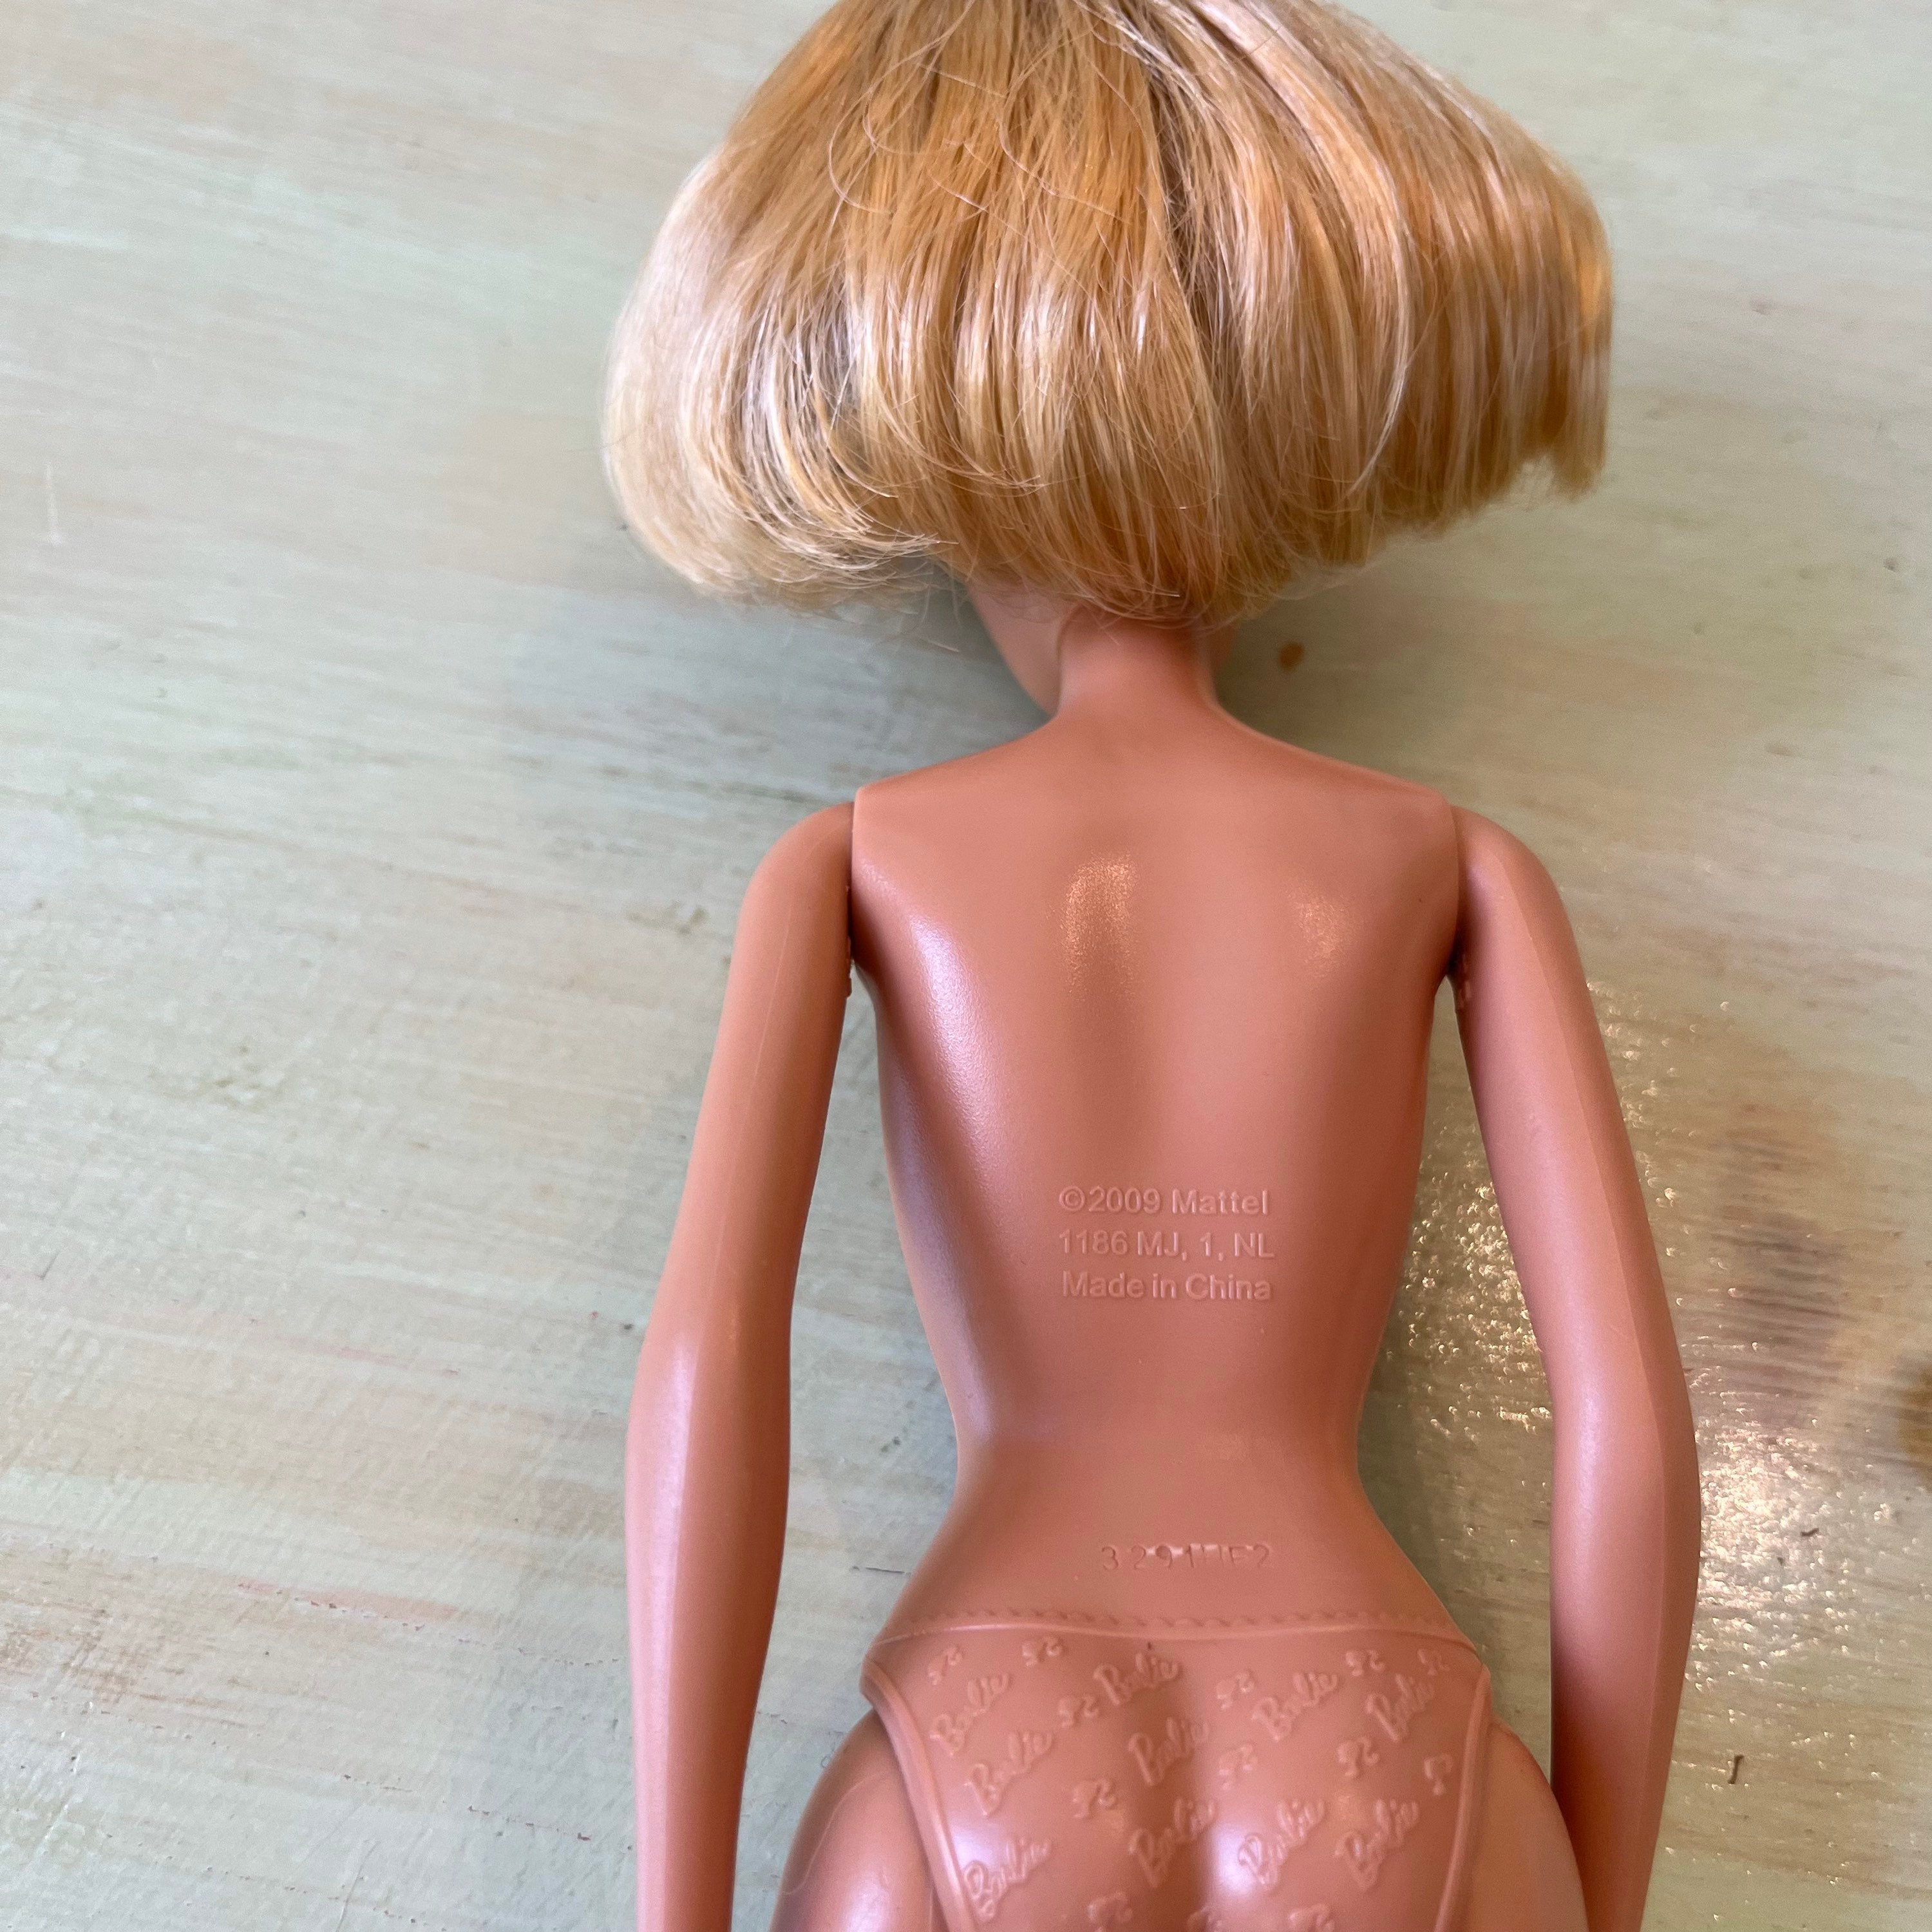 Gangster vuilnis Verdorde Barbie Doll Mattel 2009 Blond Ponytail Blue Eyes Nude - Etsy